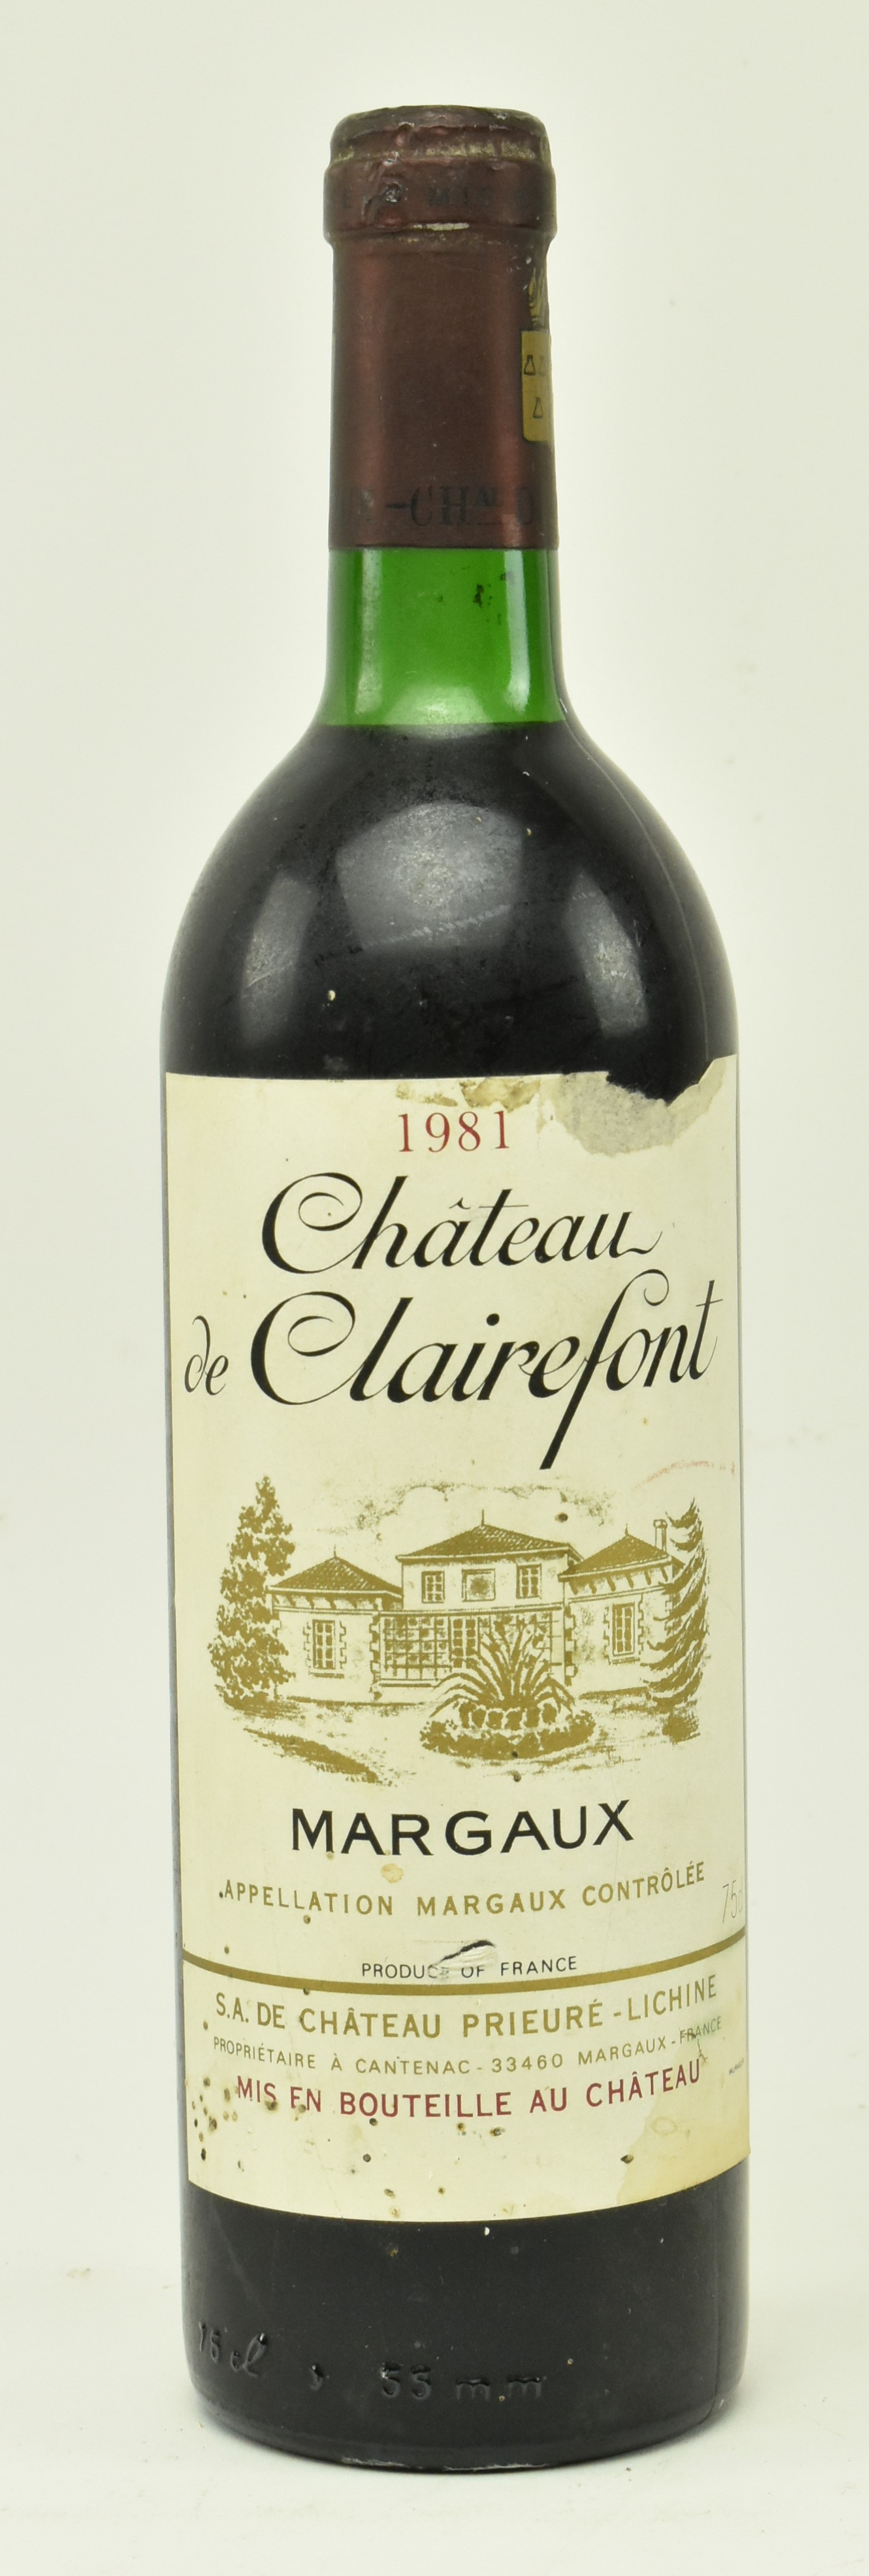 1981 CHATEAU DE CLAIREFONT MARGAUX 750ml BOTTLE